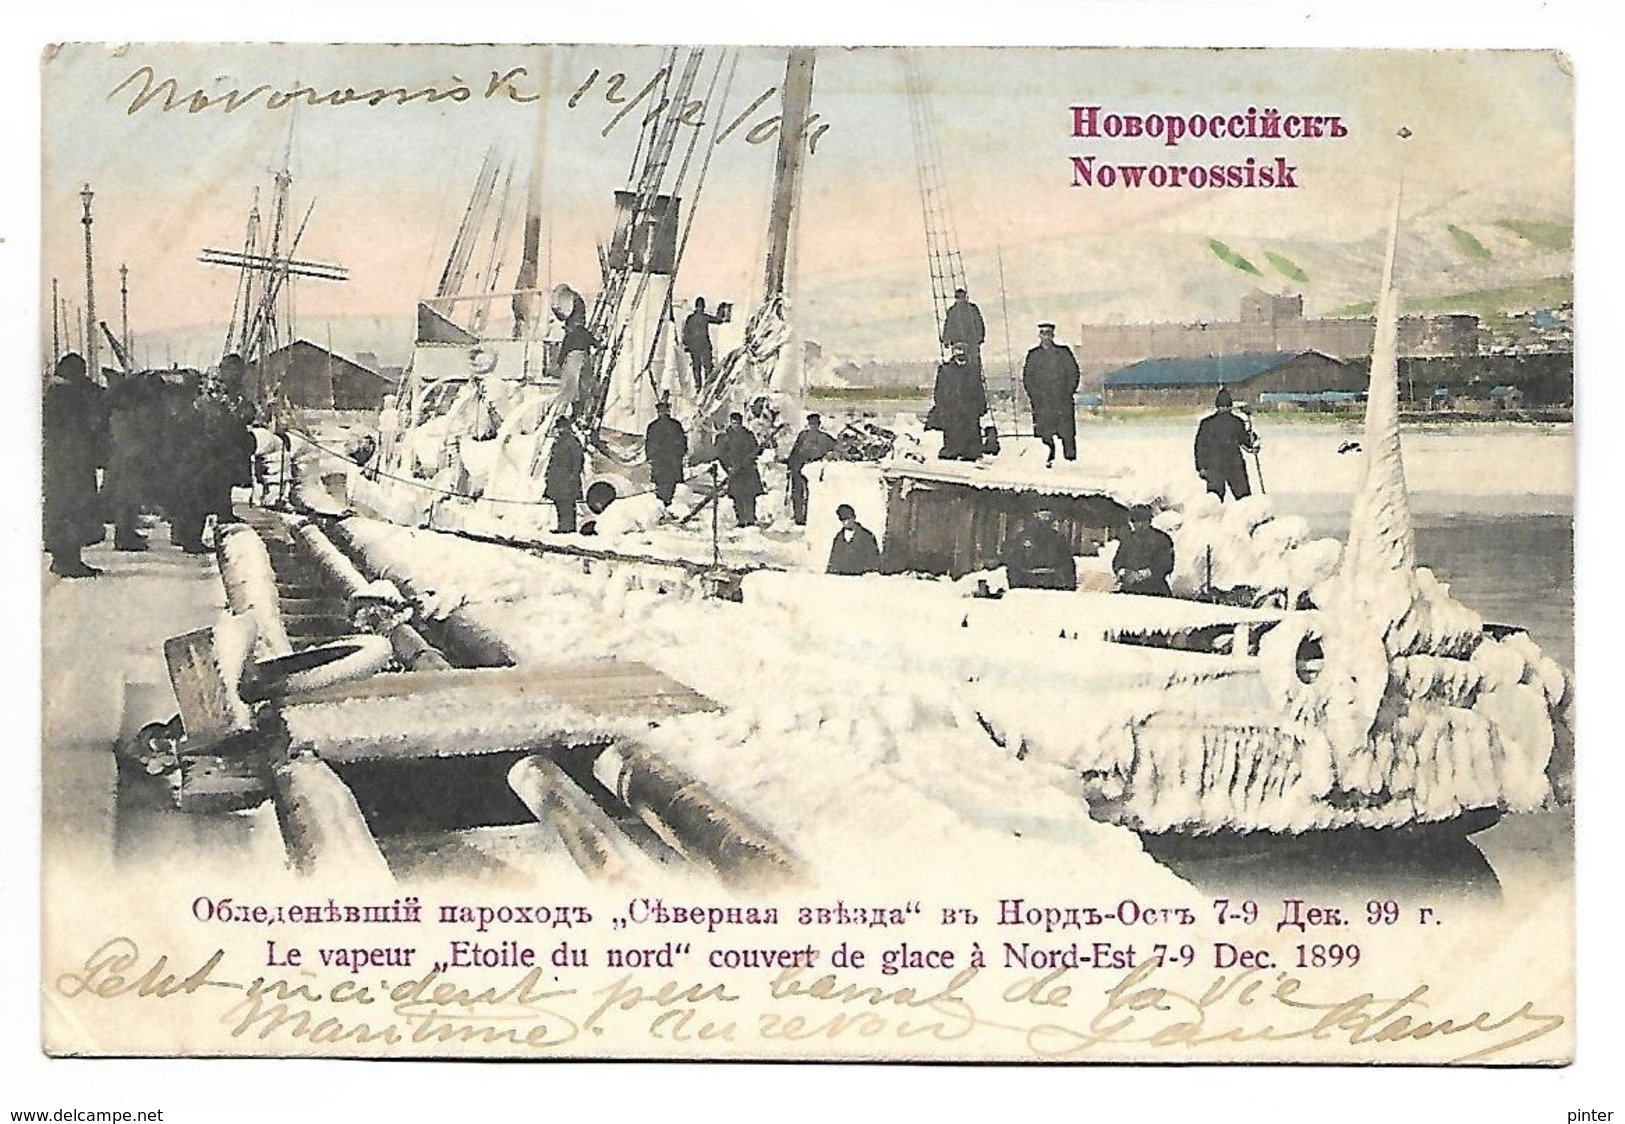 RUSSIE - NOWOROSSISK - Le Vapeur "Etoile Du Nord" Couvert De Glace à Nord-Est 7.9 - Décembre 1899 - Russie